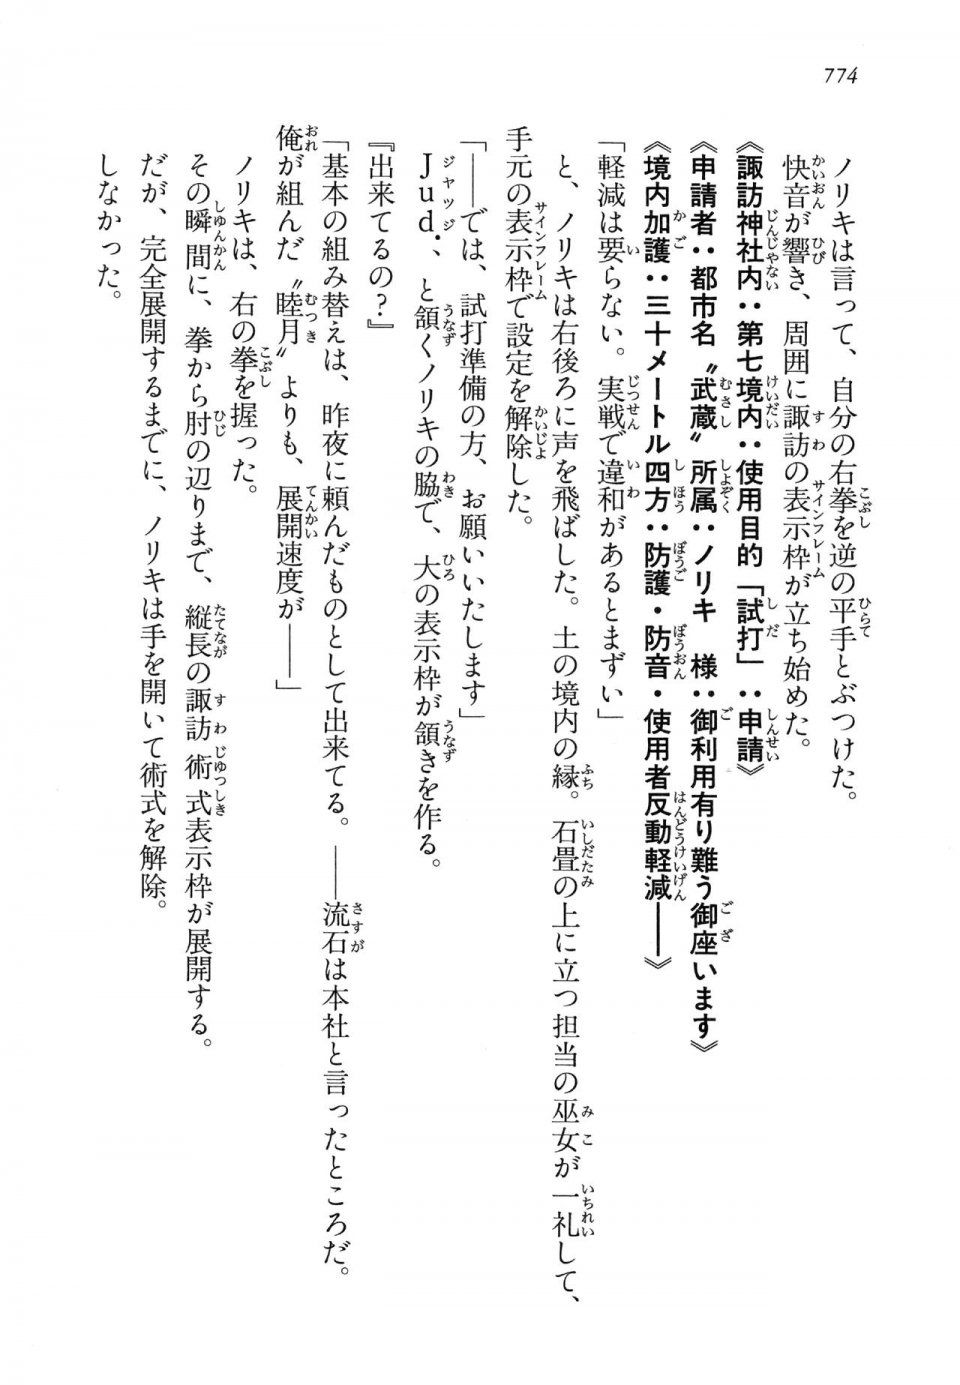 Kyoukai Senjou no Horizon LN Vol 14(6B) - Photo #774